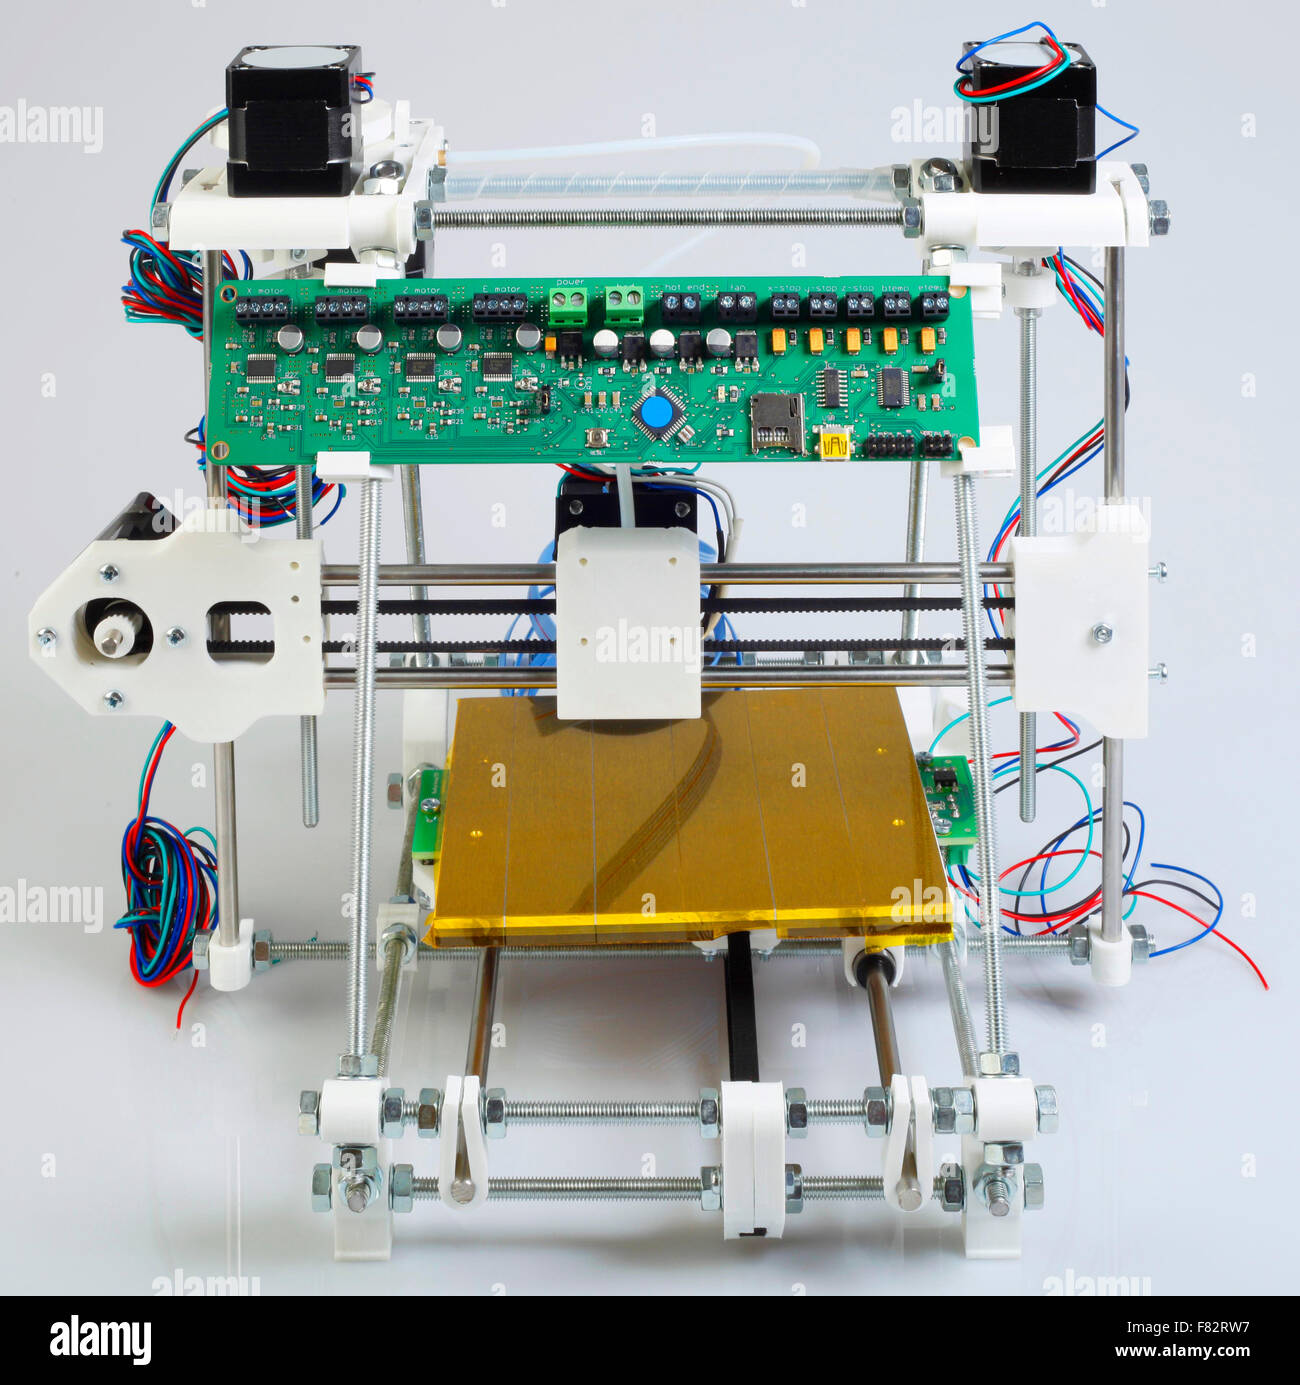 Assembling Open Source 3D Printer Stock Photo